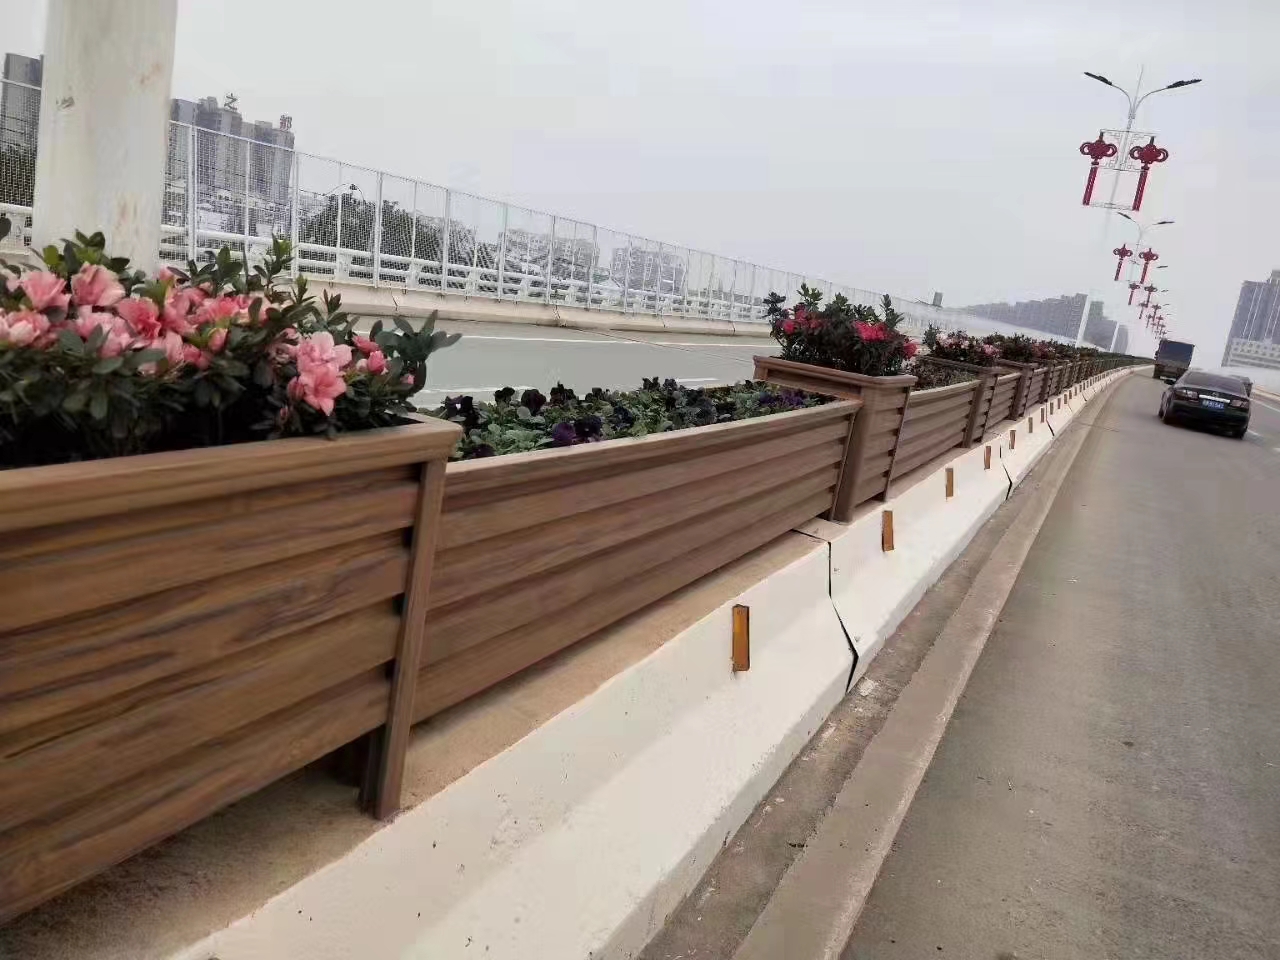 北京铝合箱花盆户外景观花箱厂家更容易养活植物